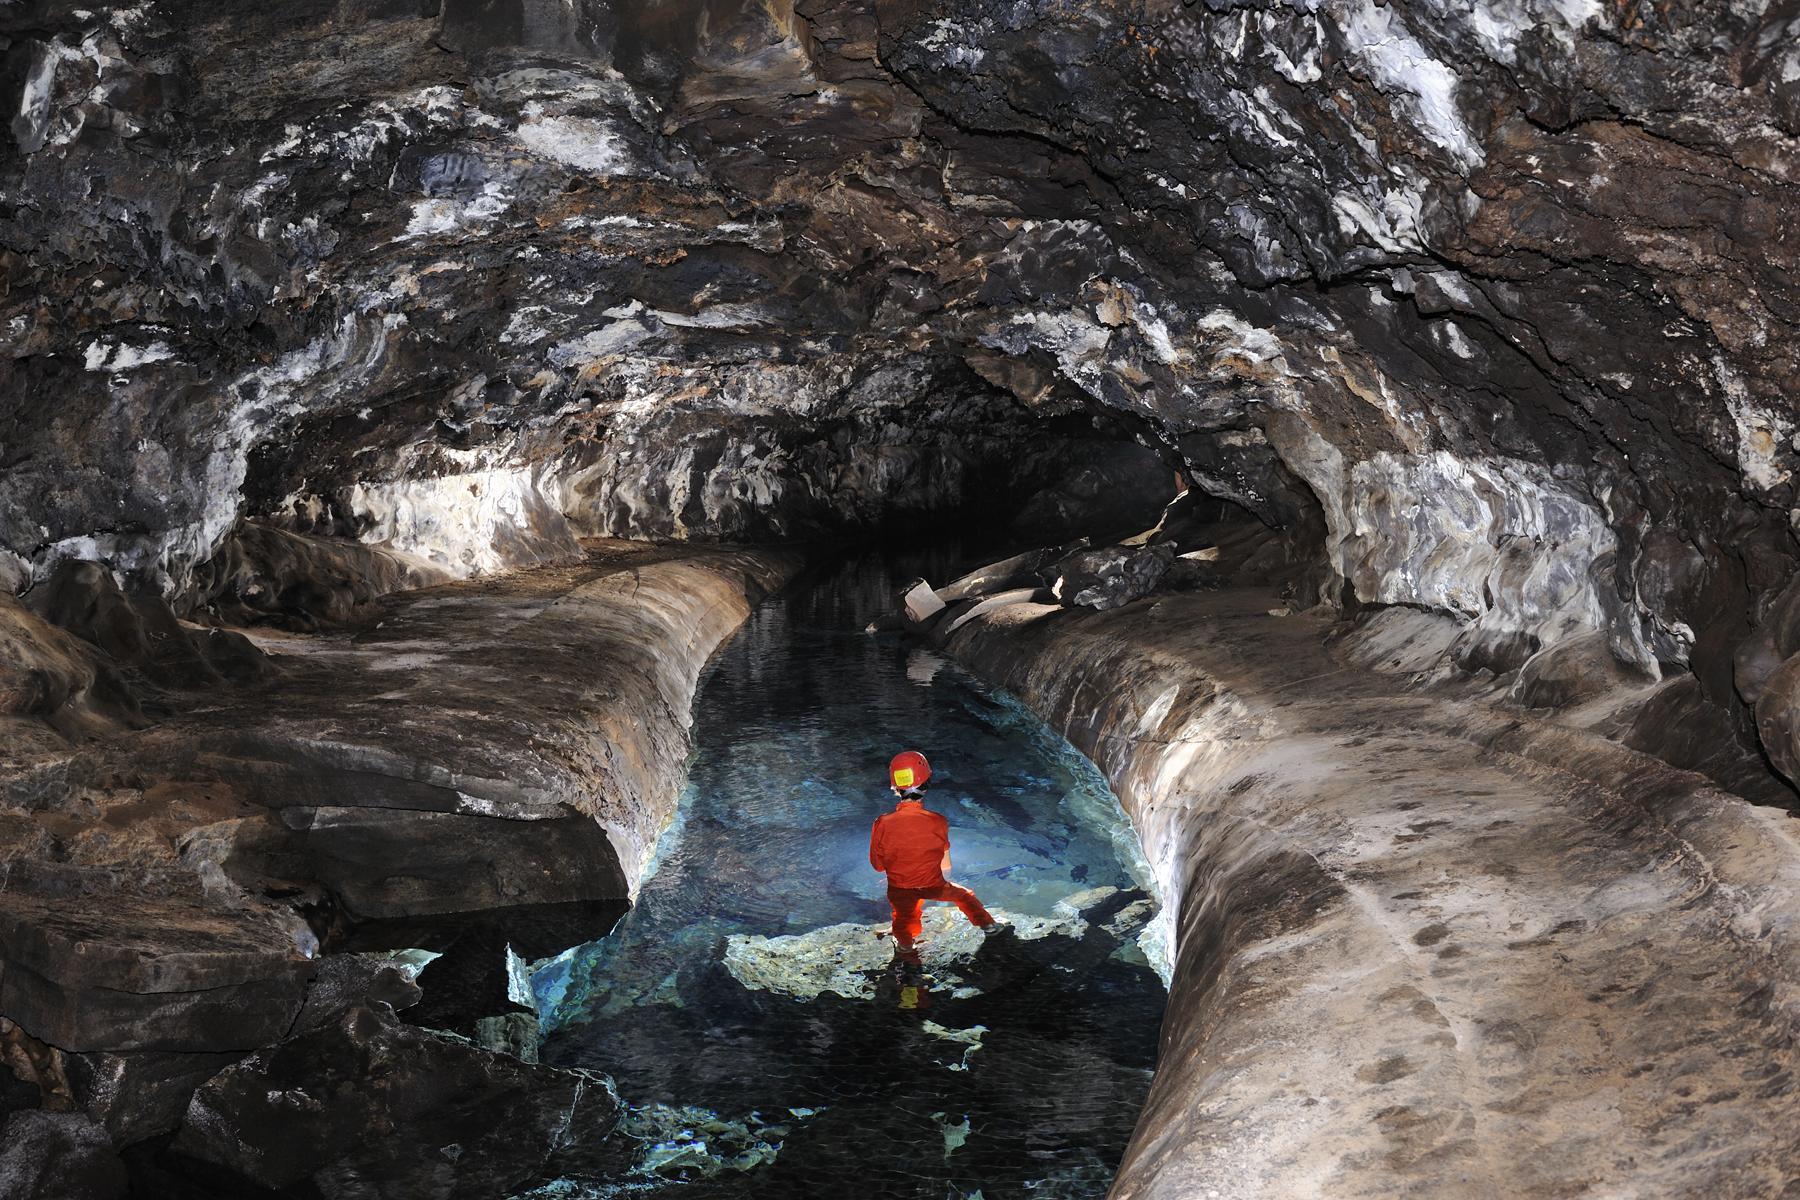 Hawaï (USA) - Tube de lave - Water Cave - Chenal d'écoulement de la lave envahi par l'eau